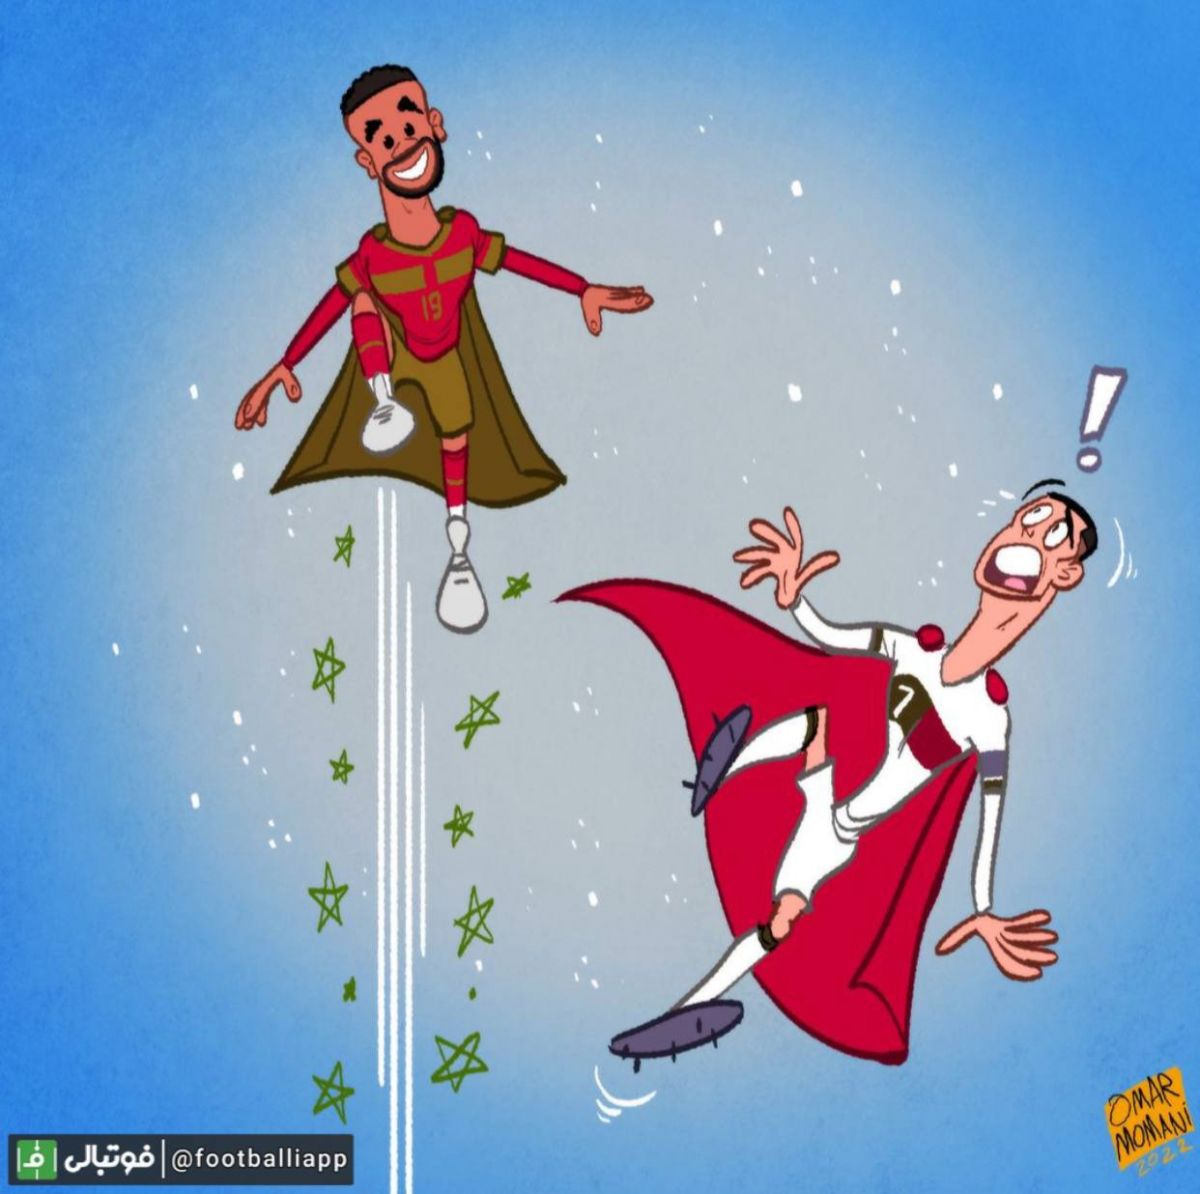 کاریکاتور جالب عمر مومنی از ثبت رکورد پرش در جام جهانی ۲۰۲۲ توسط یوسف النصیری با ارتفاع ۲.۷۵ متری